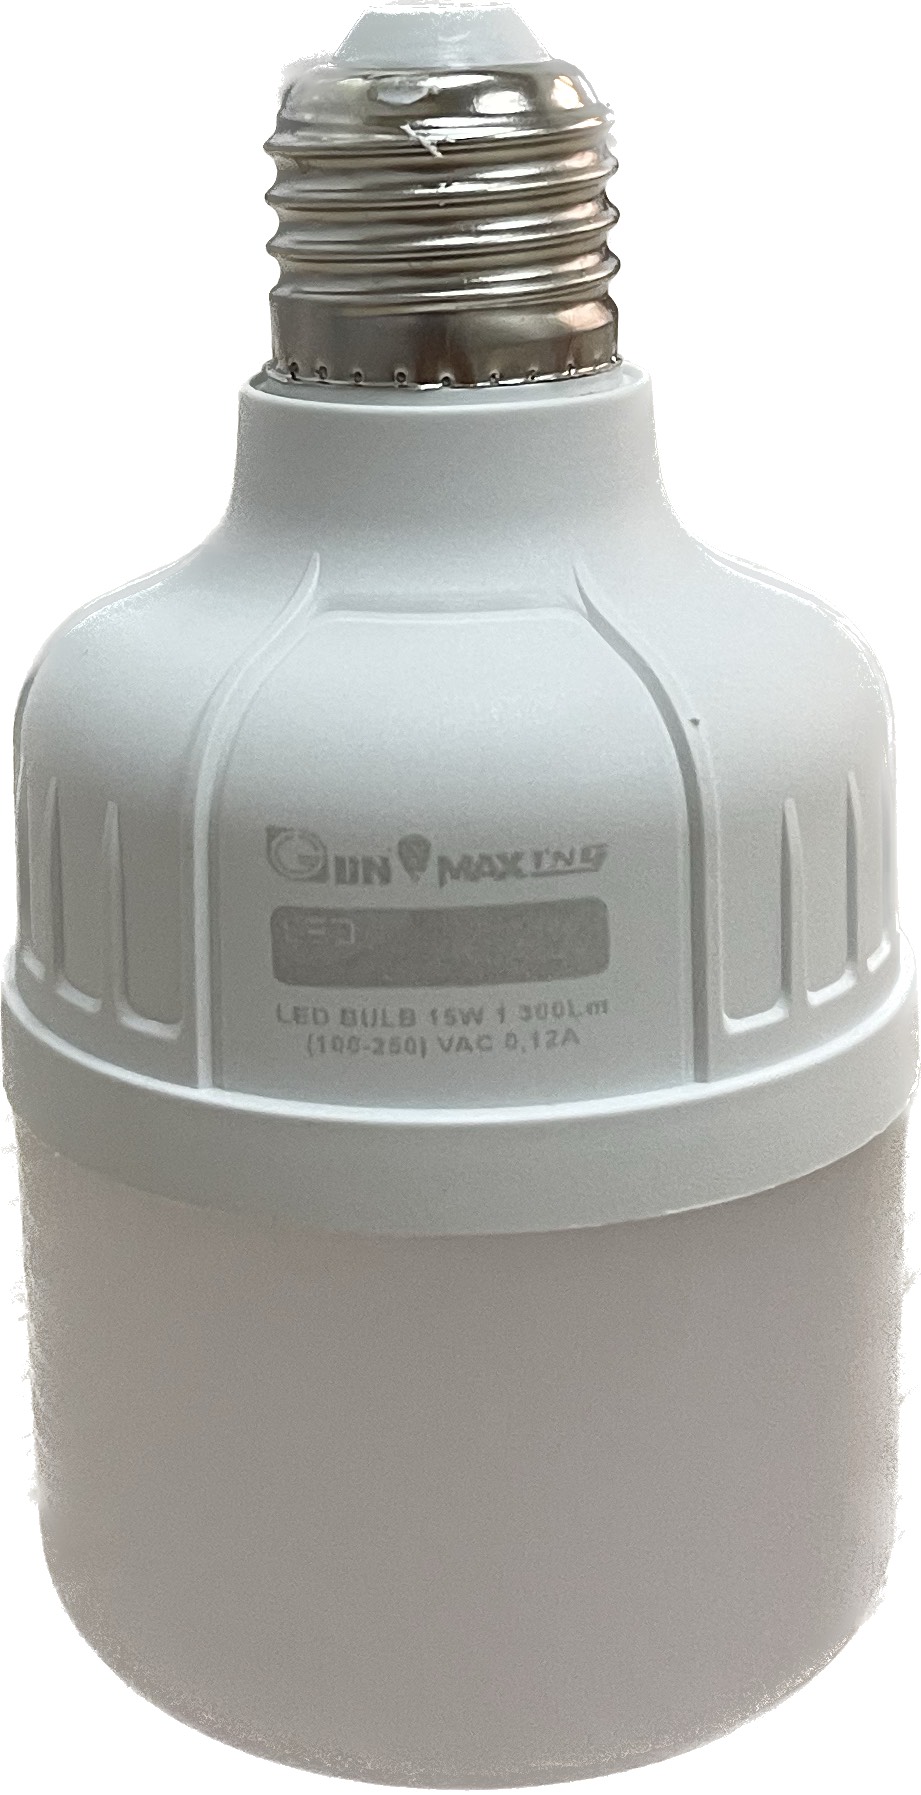 Combo 10 LED trụ nhựa 15W sáng trắng- Gunmax TNG